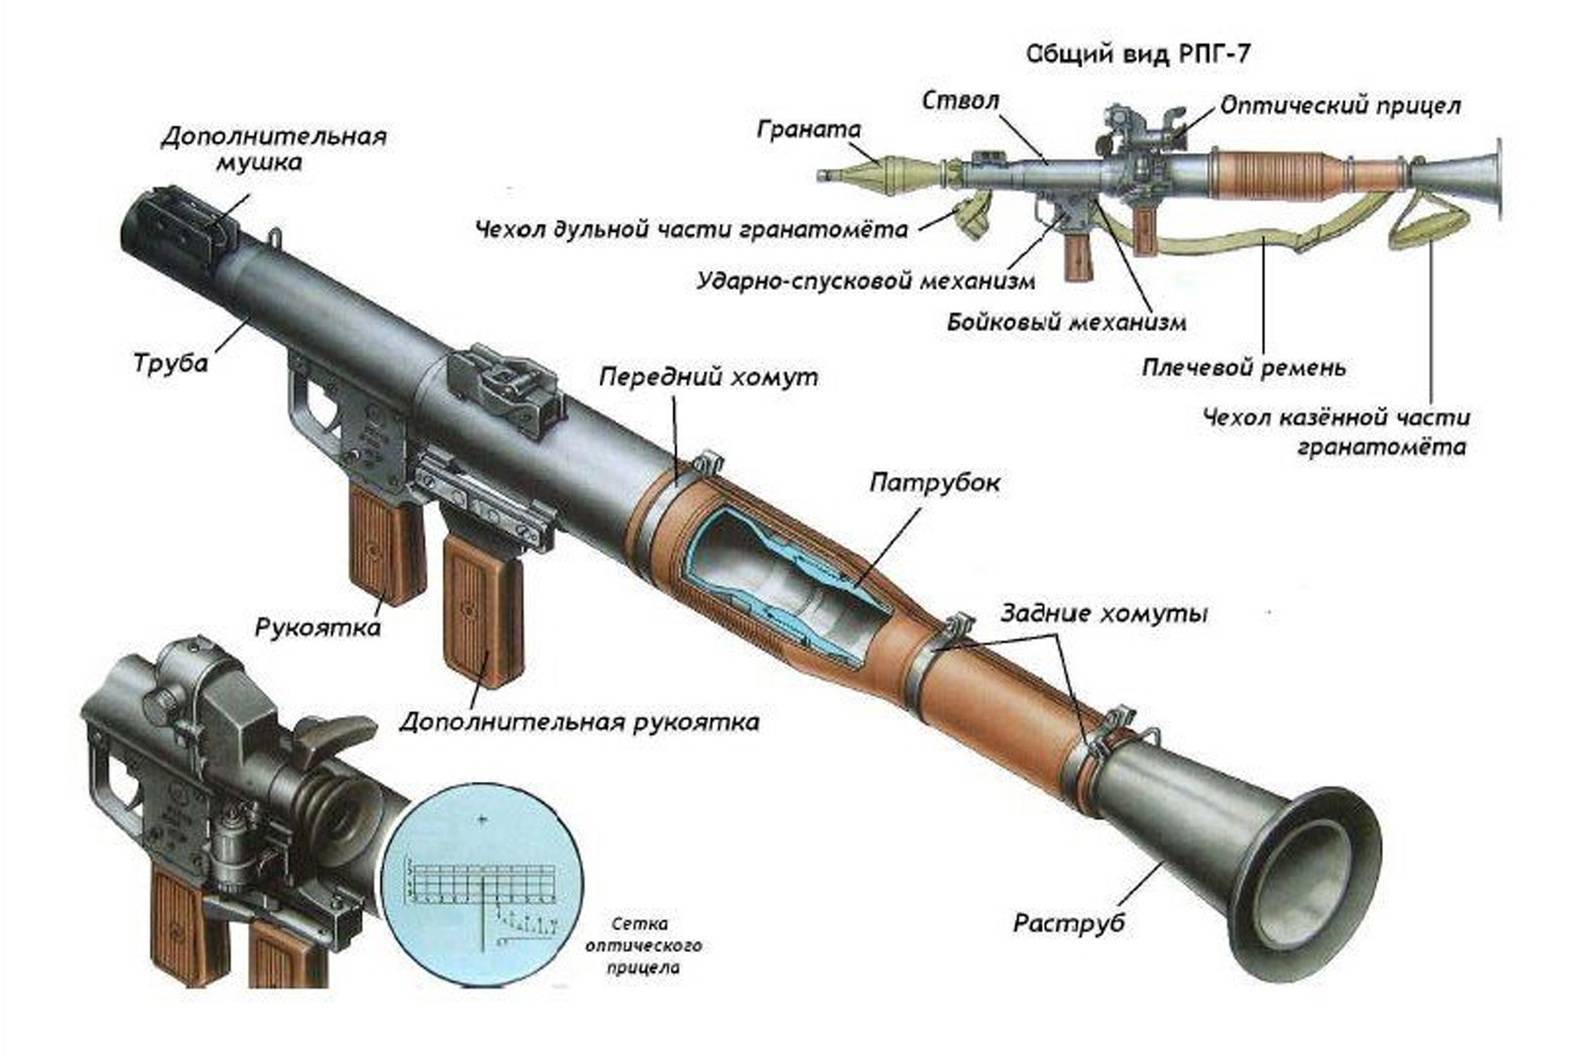 Базука инструмент музыкальный – ручной противотанковый гранатомет, описание рпг базука и технические характеристики ттх, модификации оружия m20, m9, m1